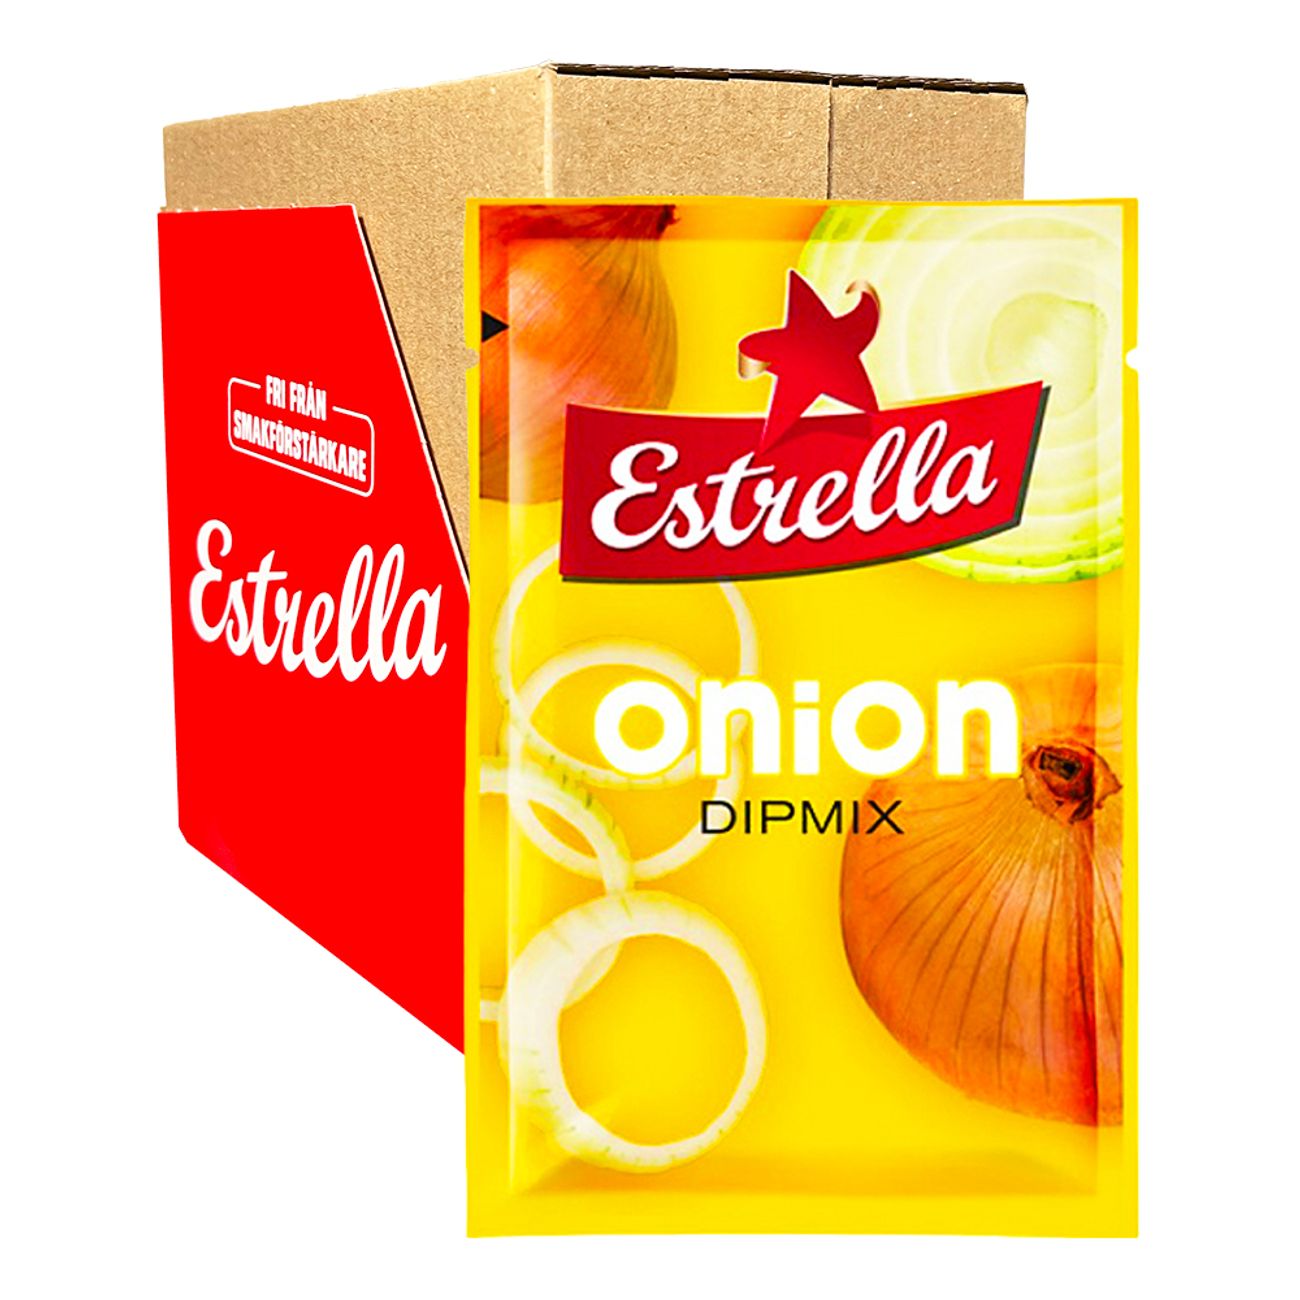 estrella-dippmix-onion-storpack-36049-2